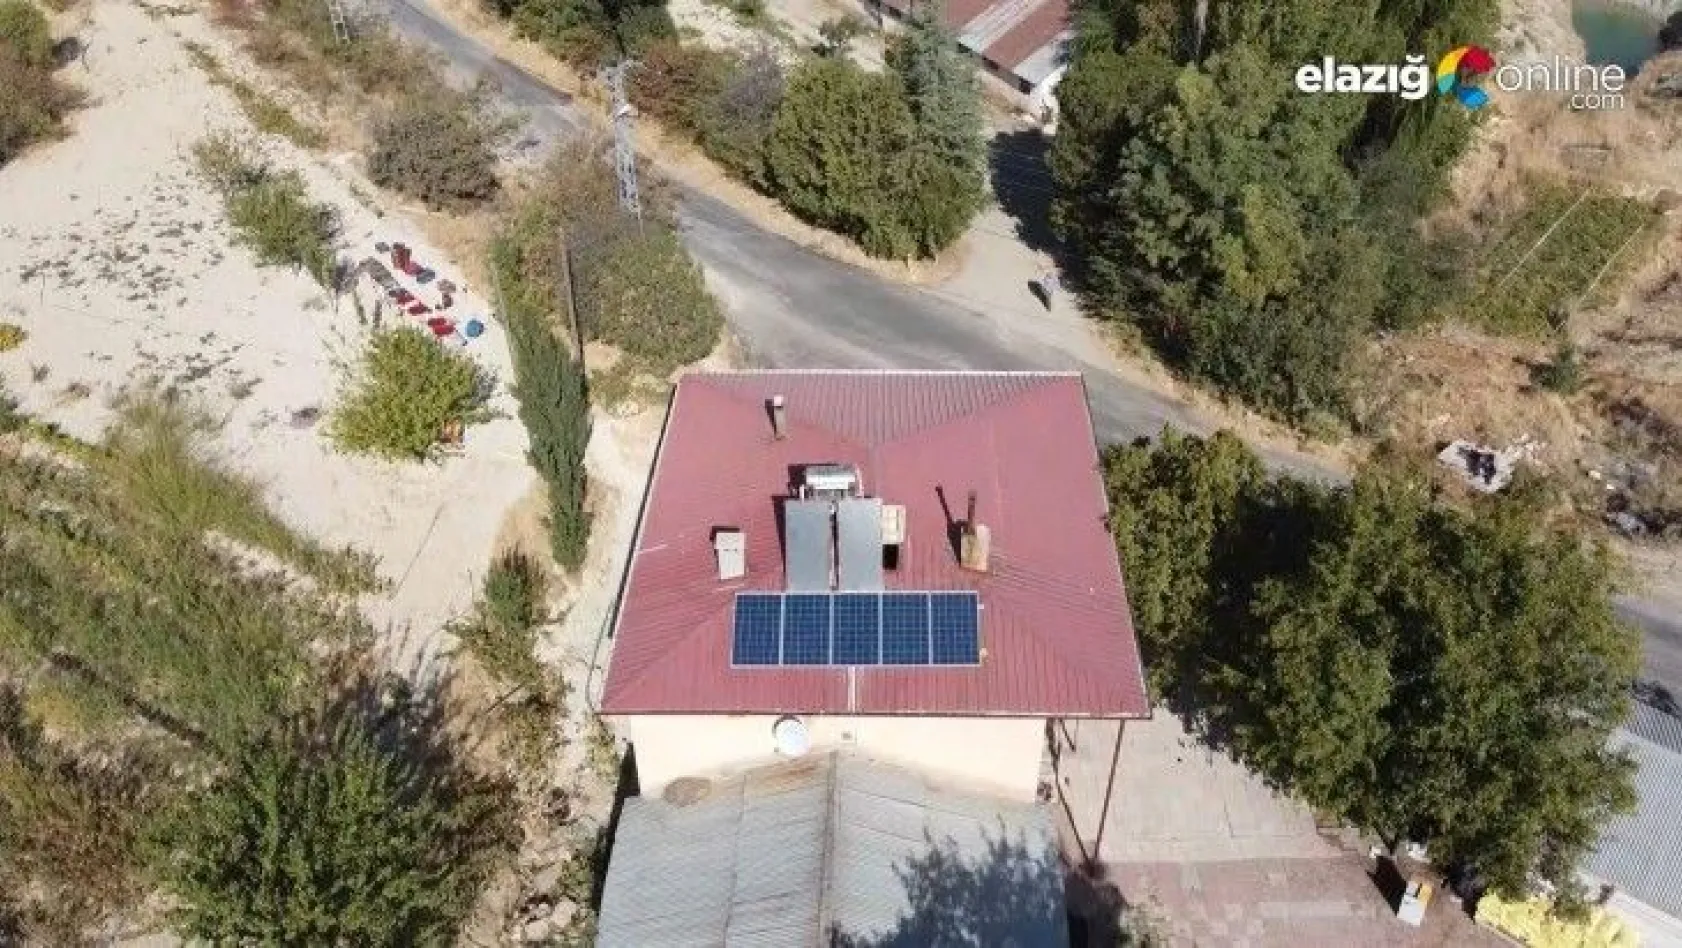 2 köyde çatılara kuruldu, artık kendi elektriklerini üretecekler